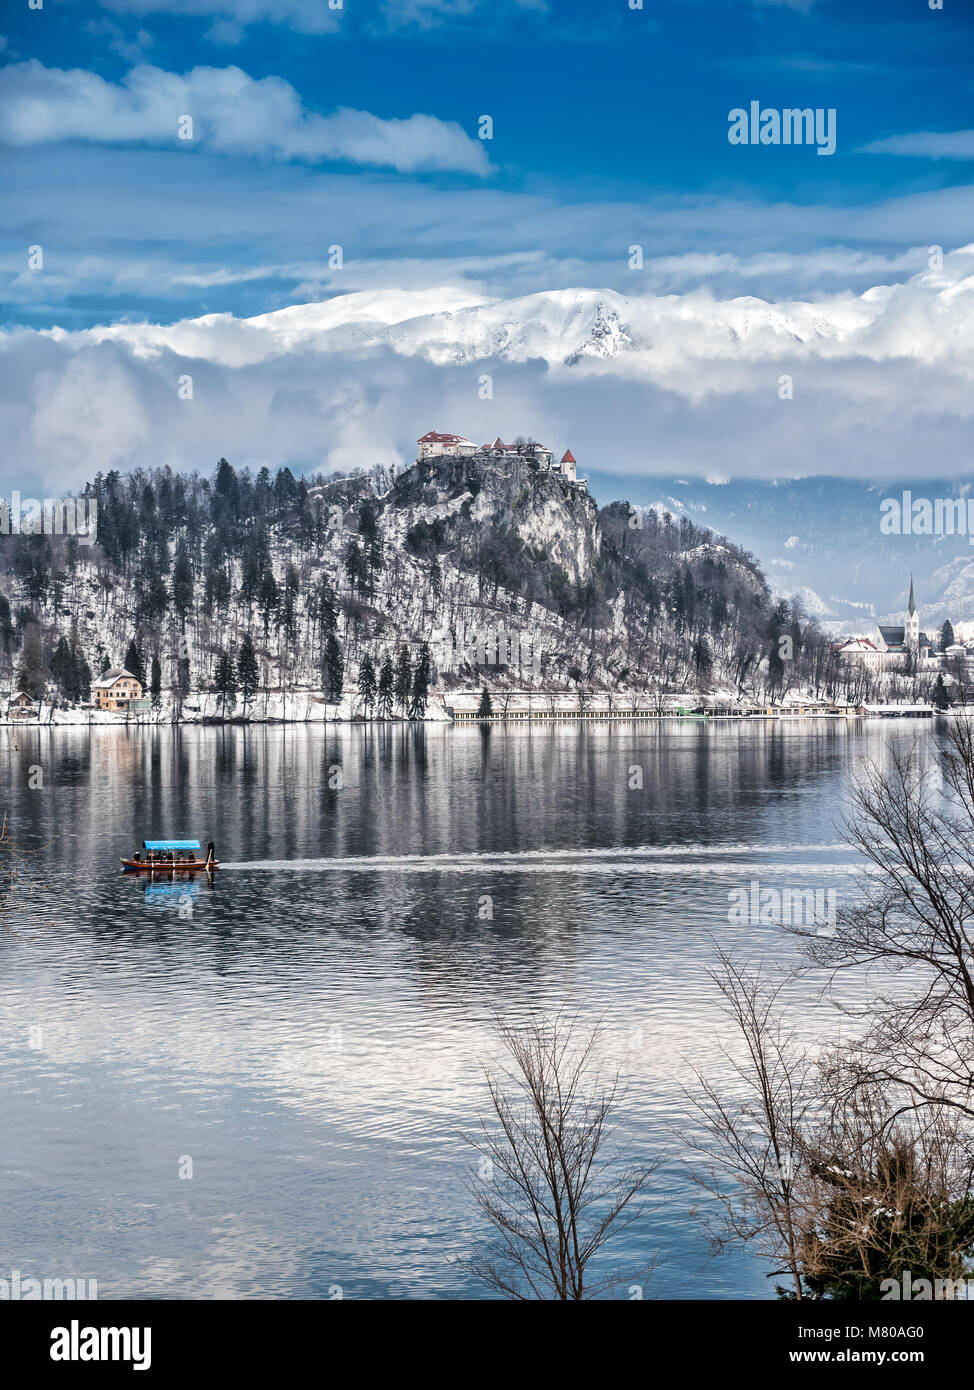 Le lac de Bled avec le point de vue de l'Église et le château de l'Asumption de Maria sur l'île de Bled, contre les majestueuses Alpes en arrière-plan, Slove Banque D'Images